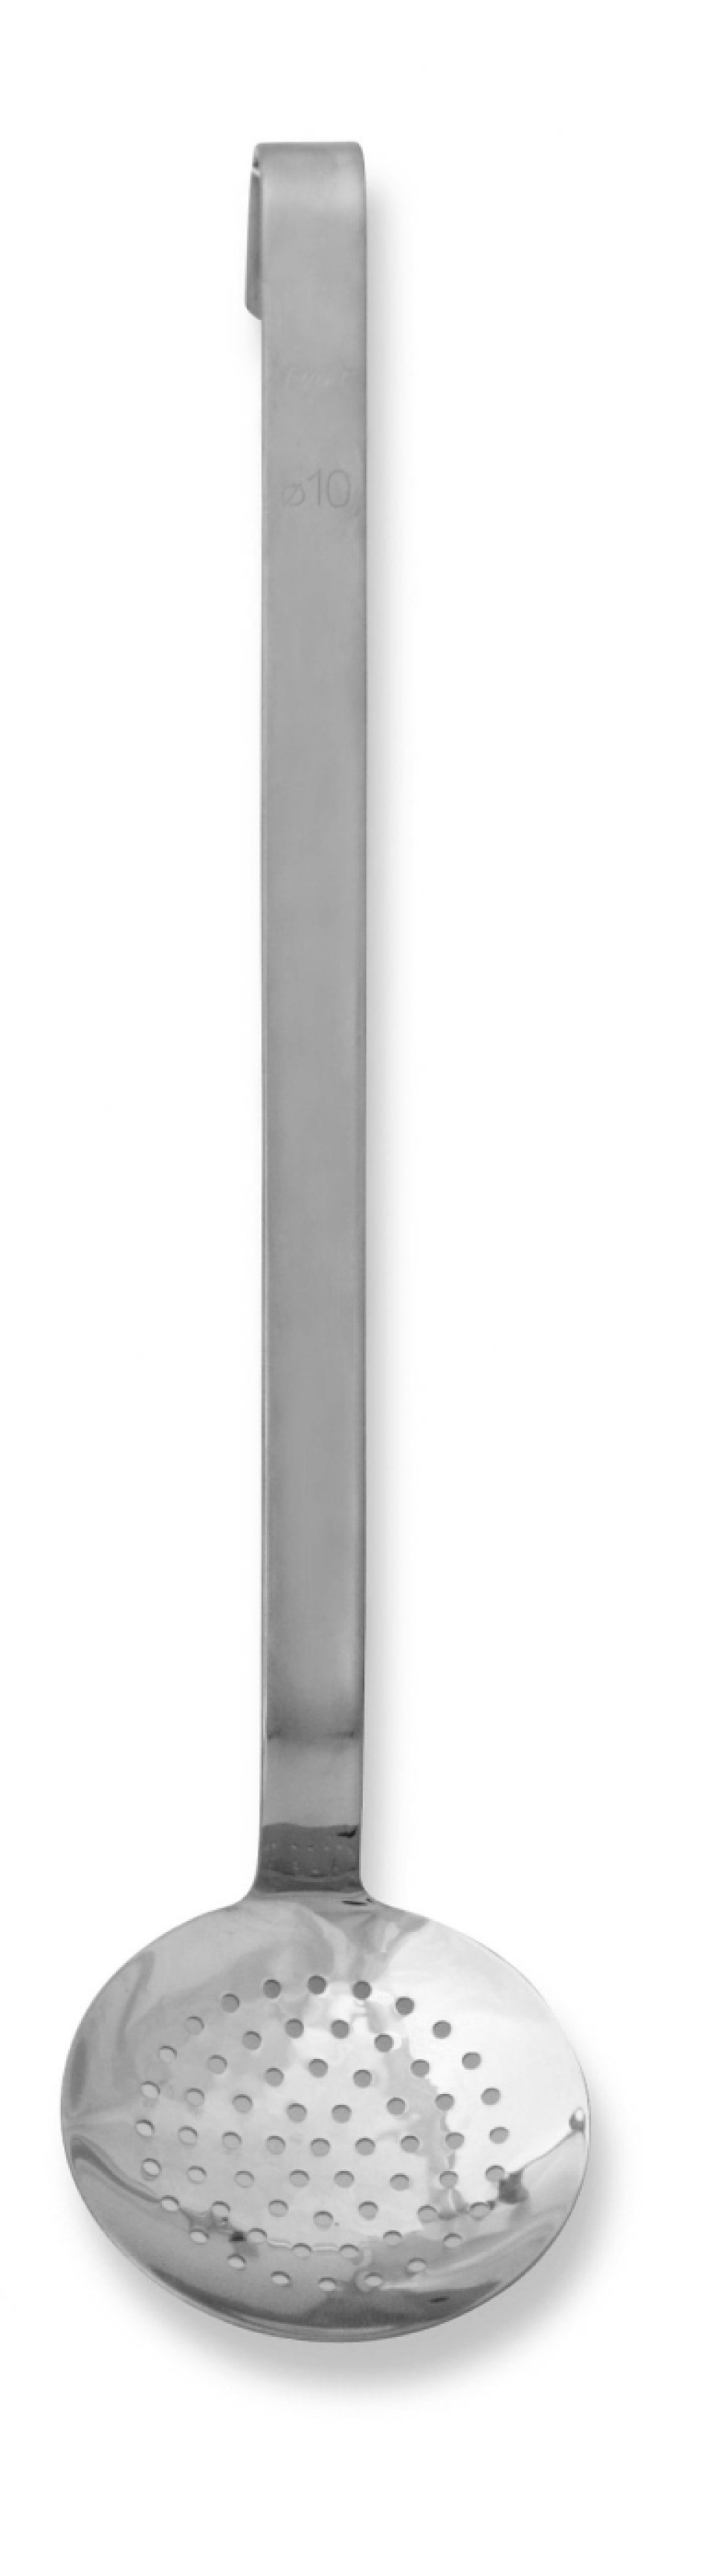 Hålslev Ø 10cm, längd 33cm i gruppen Matlagning / Köksredskap / Slevar & skedar hos KitchenLab (1071-10934)